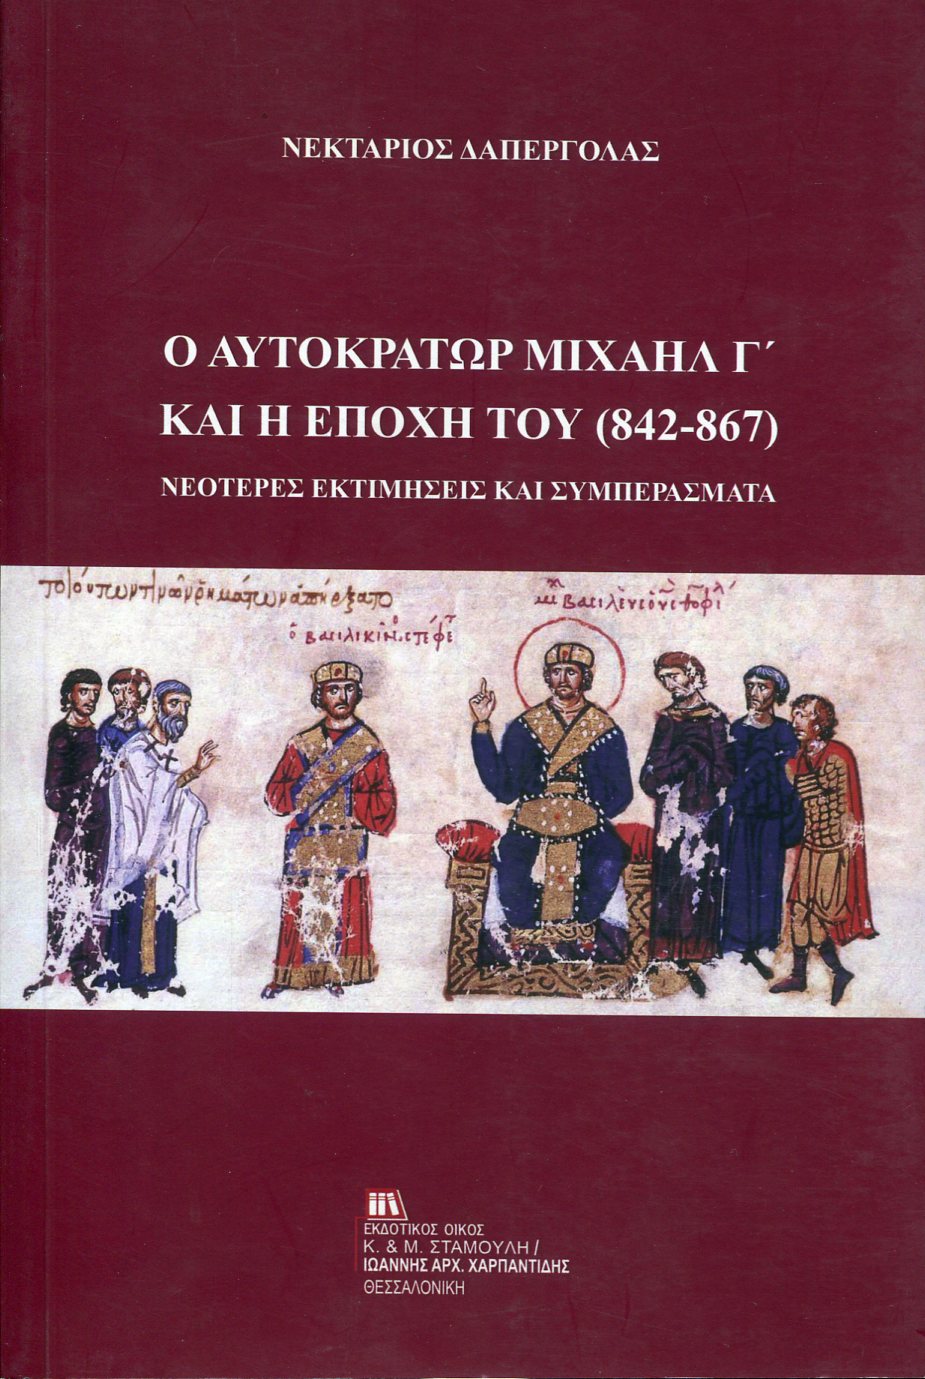 Ο ΑΥΤΟΚΡΑΤΩΡ ΜΙΧΑΗΛ Γ΄ ΚΑΙ Η ΕΠΟΧΗ ΤΟΥ (842-867)